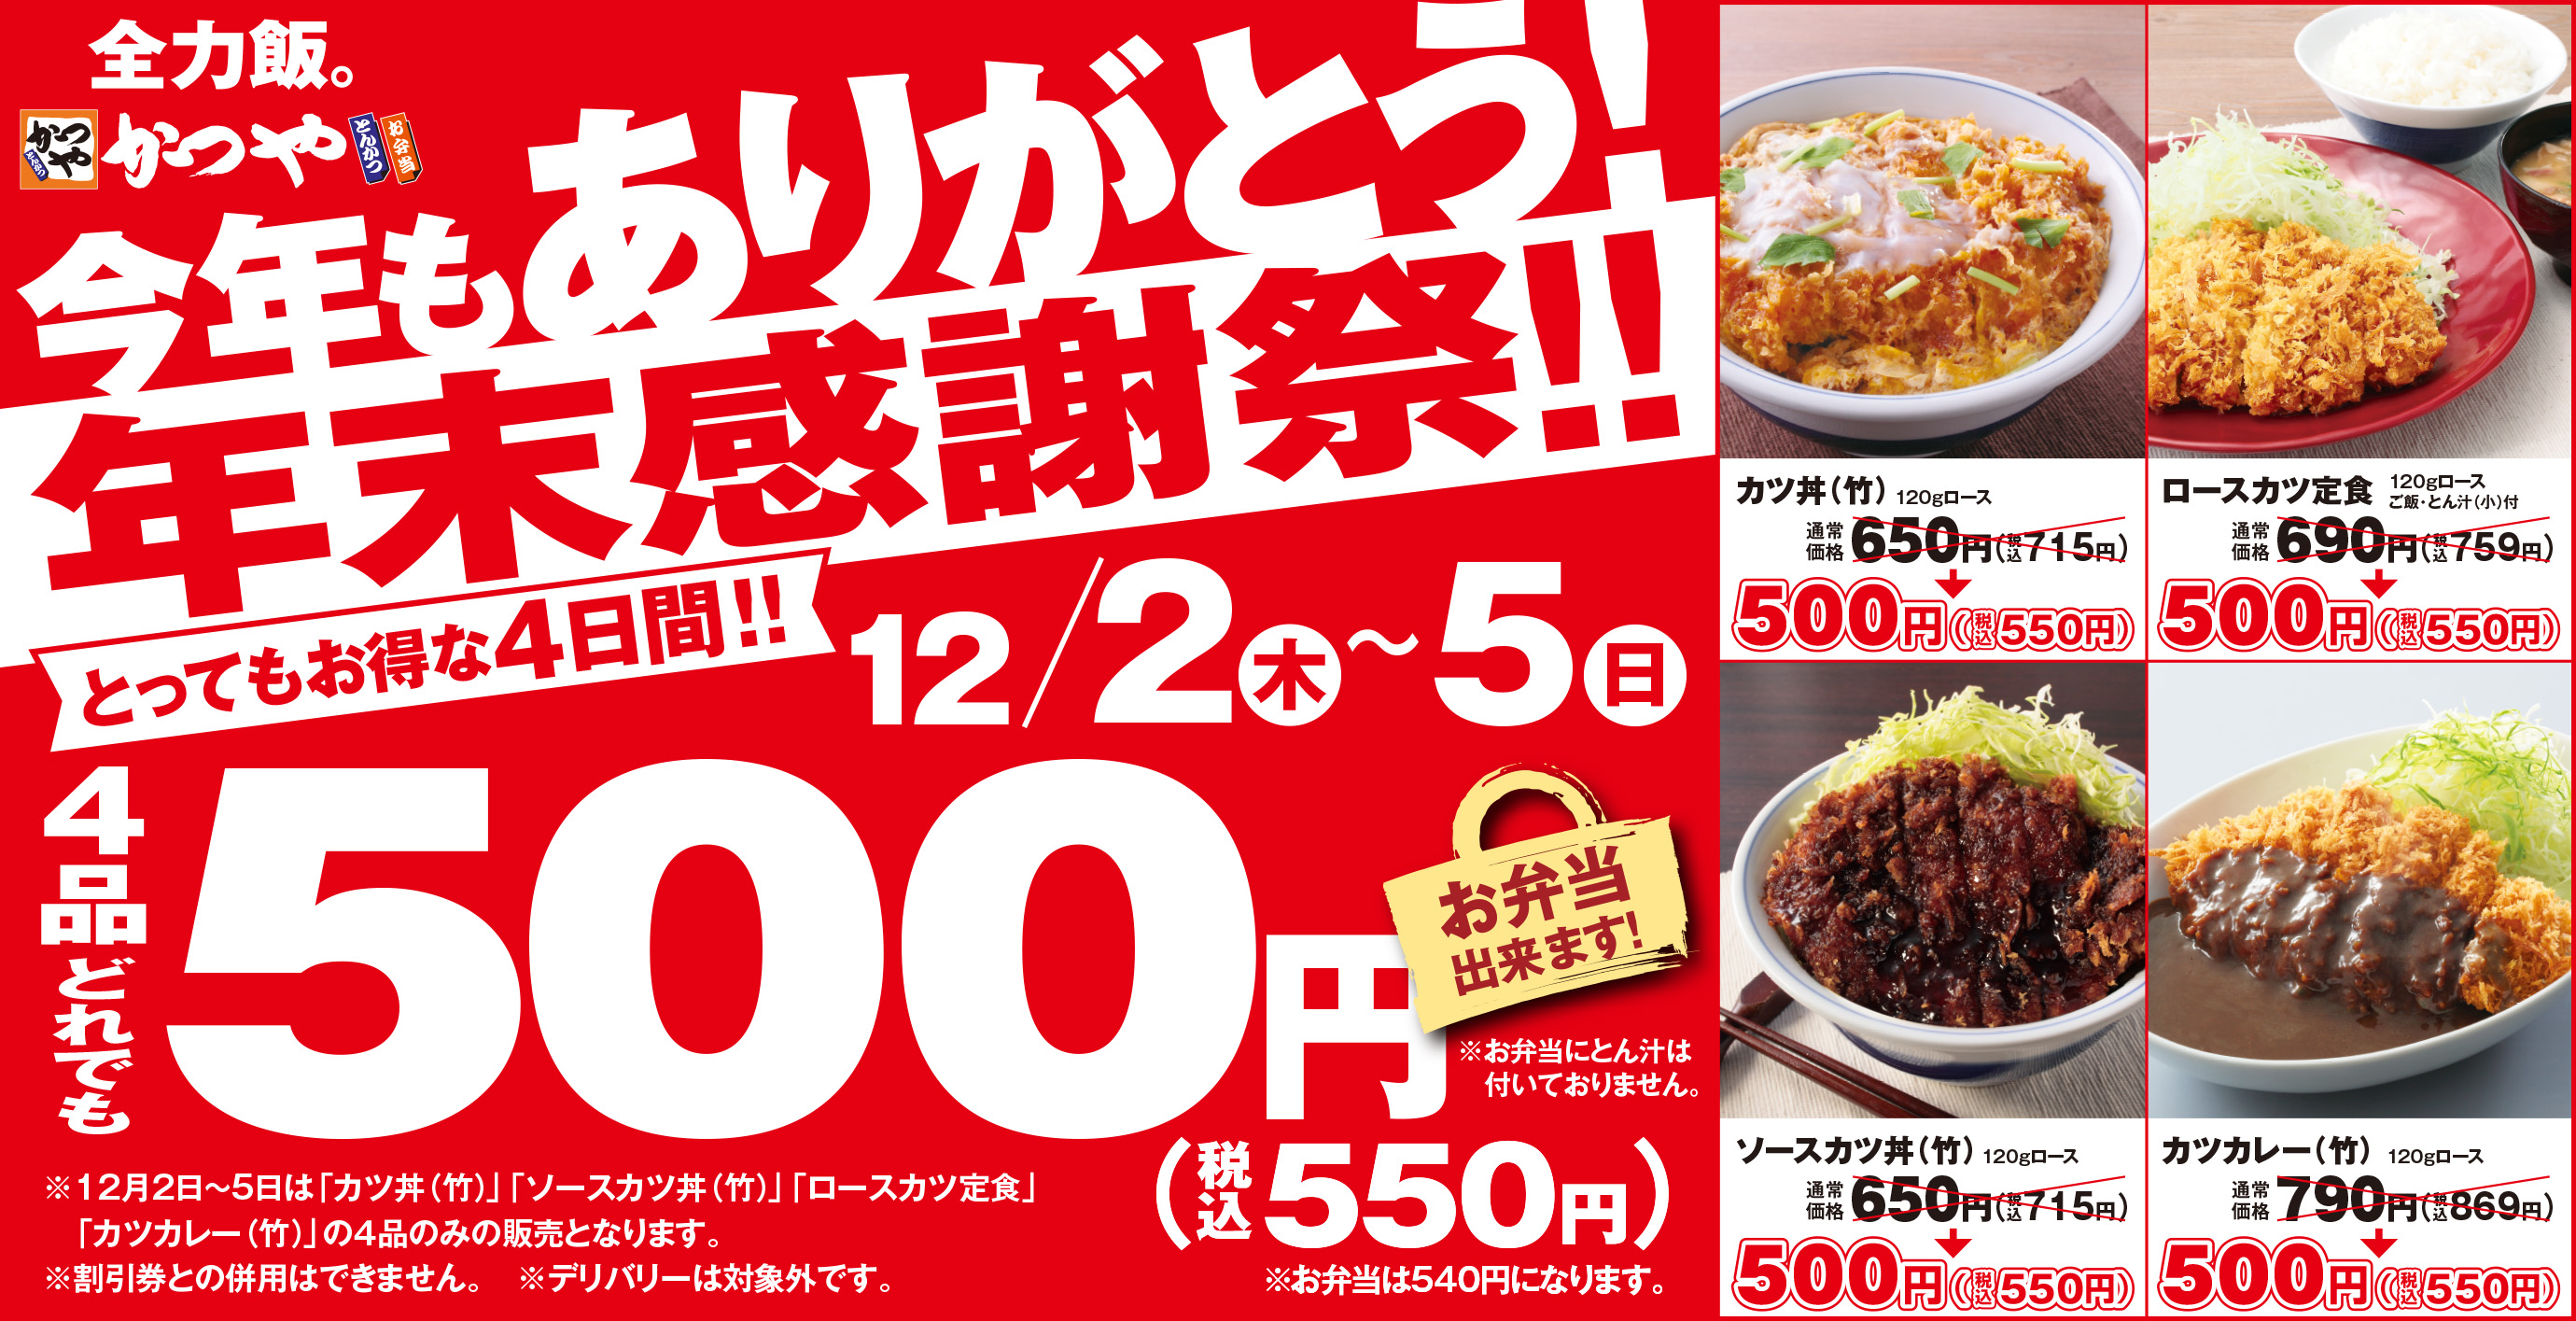 かつや、カツ丼やカツカレーなど4品がどれでも550円の「年末感謝祭」 - グルメ Watch